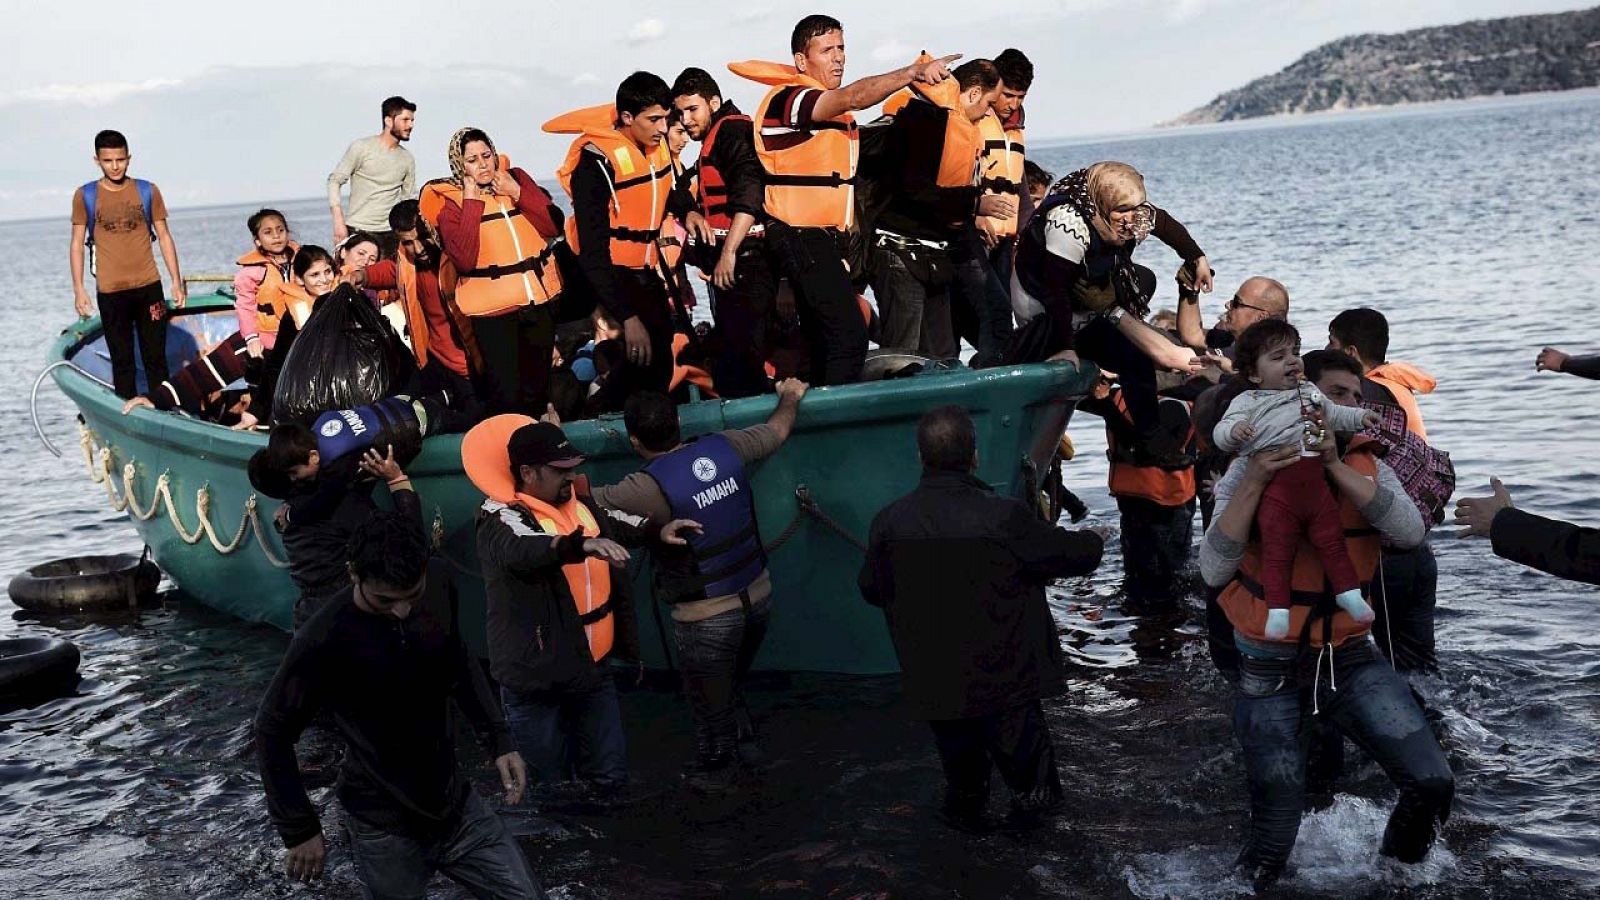 Refugiados llegan a la isla griega de Lesbos tras cruzar el Egeo desde Turquía, el 10 de noviembre de 2015. AFP PHOTO / ARIS MESSINIS